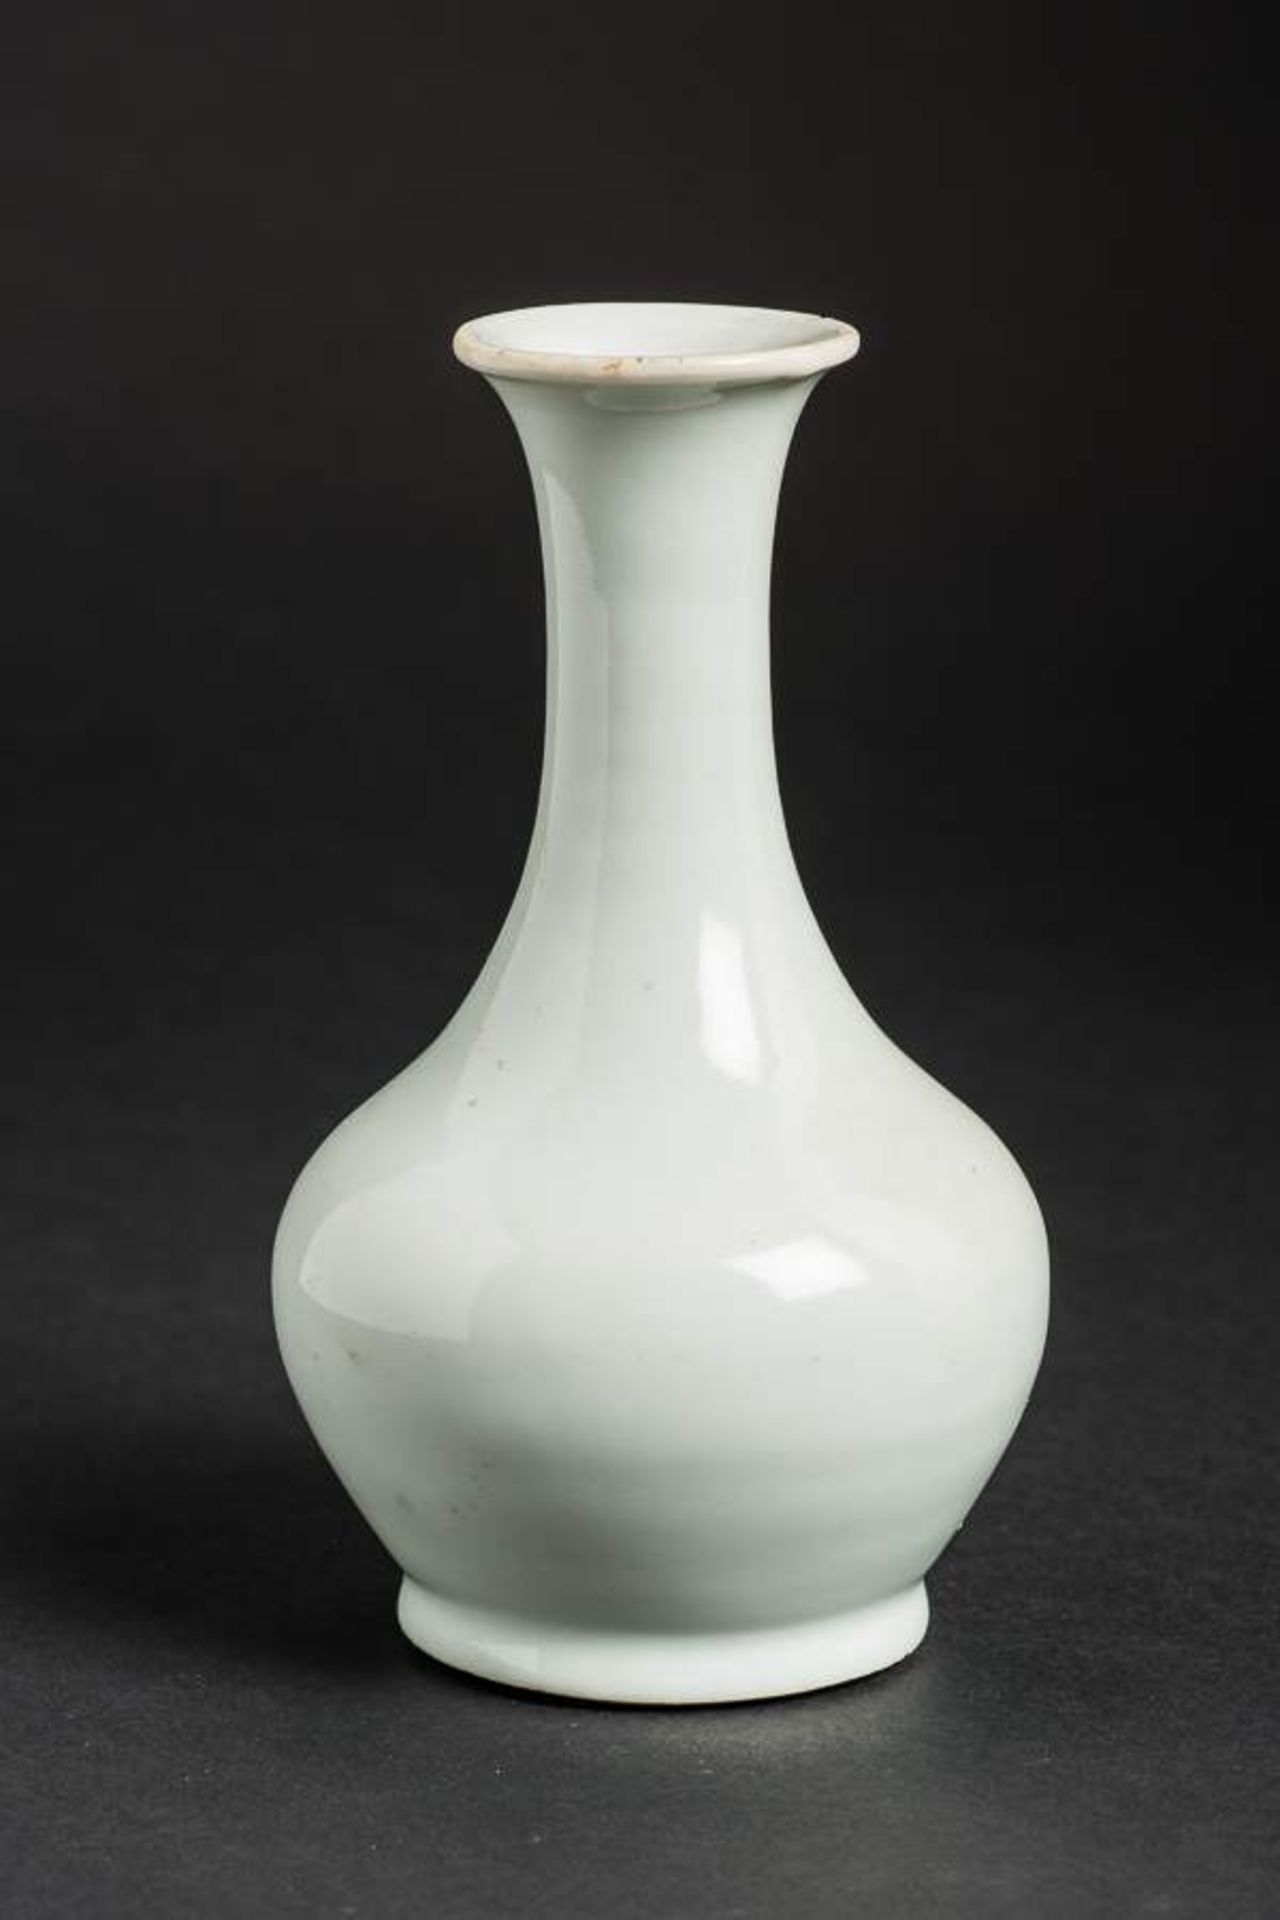 HELLBLAUE VASE Porzellan. China, späte Qing-Dynastie (1644-1911) Fein geförmte kleine Vase mit - Image 6 of 9